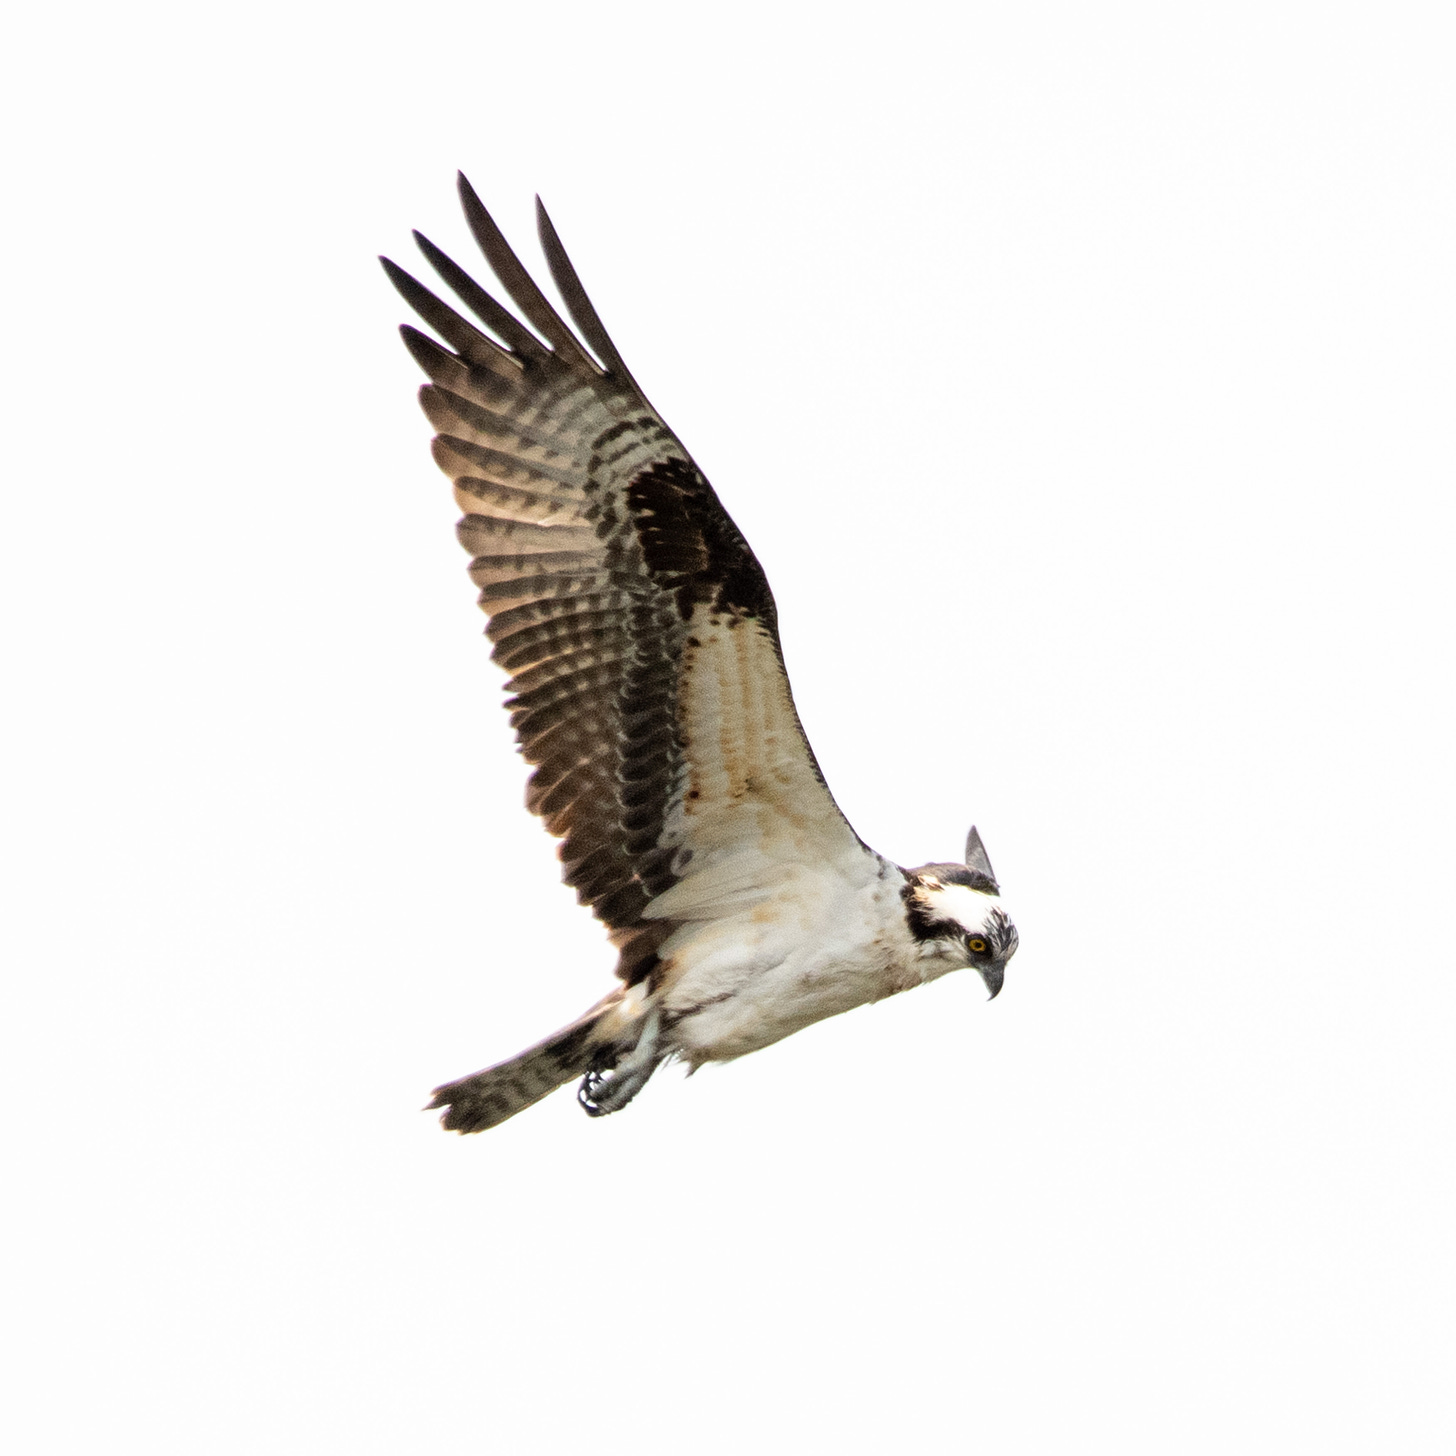 An osprey in flight, wings extended, eyes down as it hunts